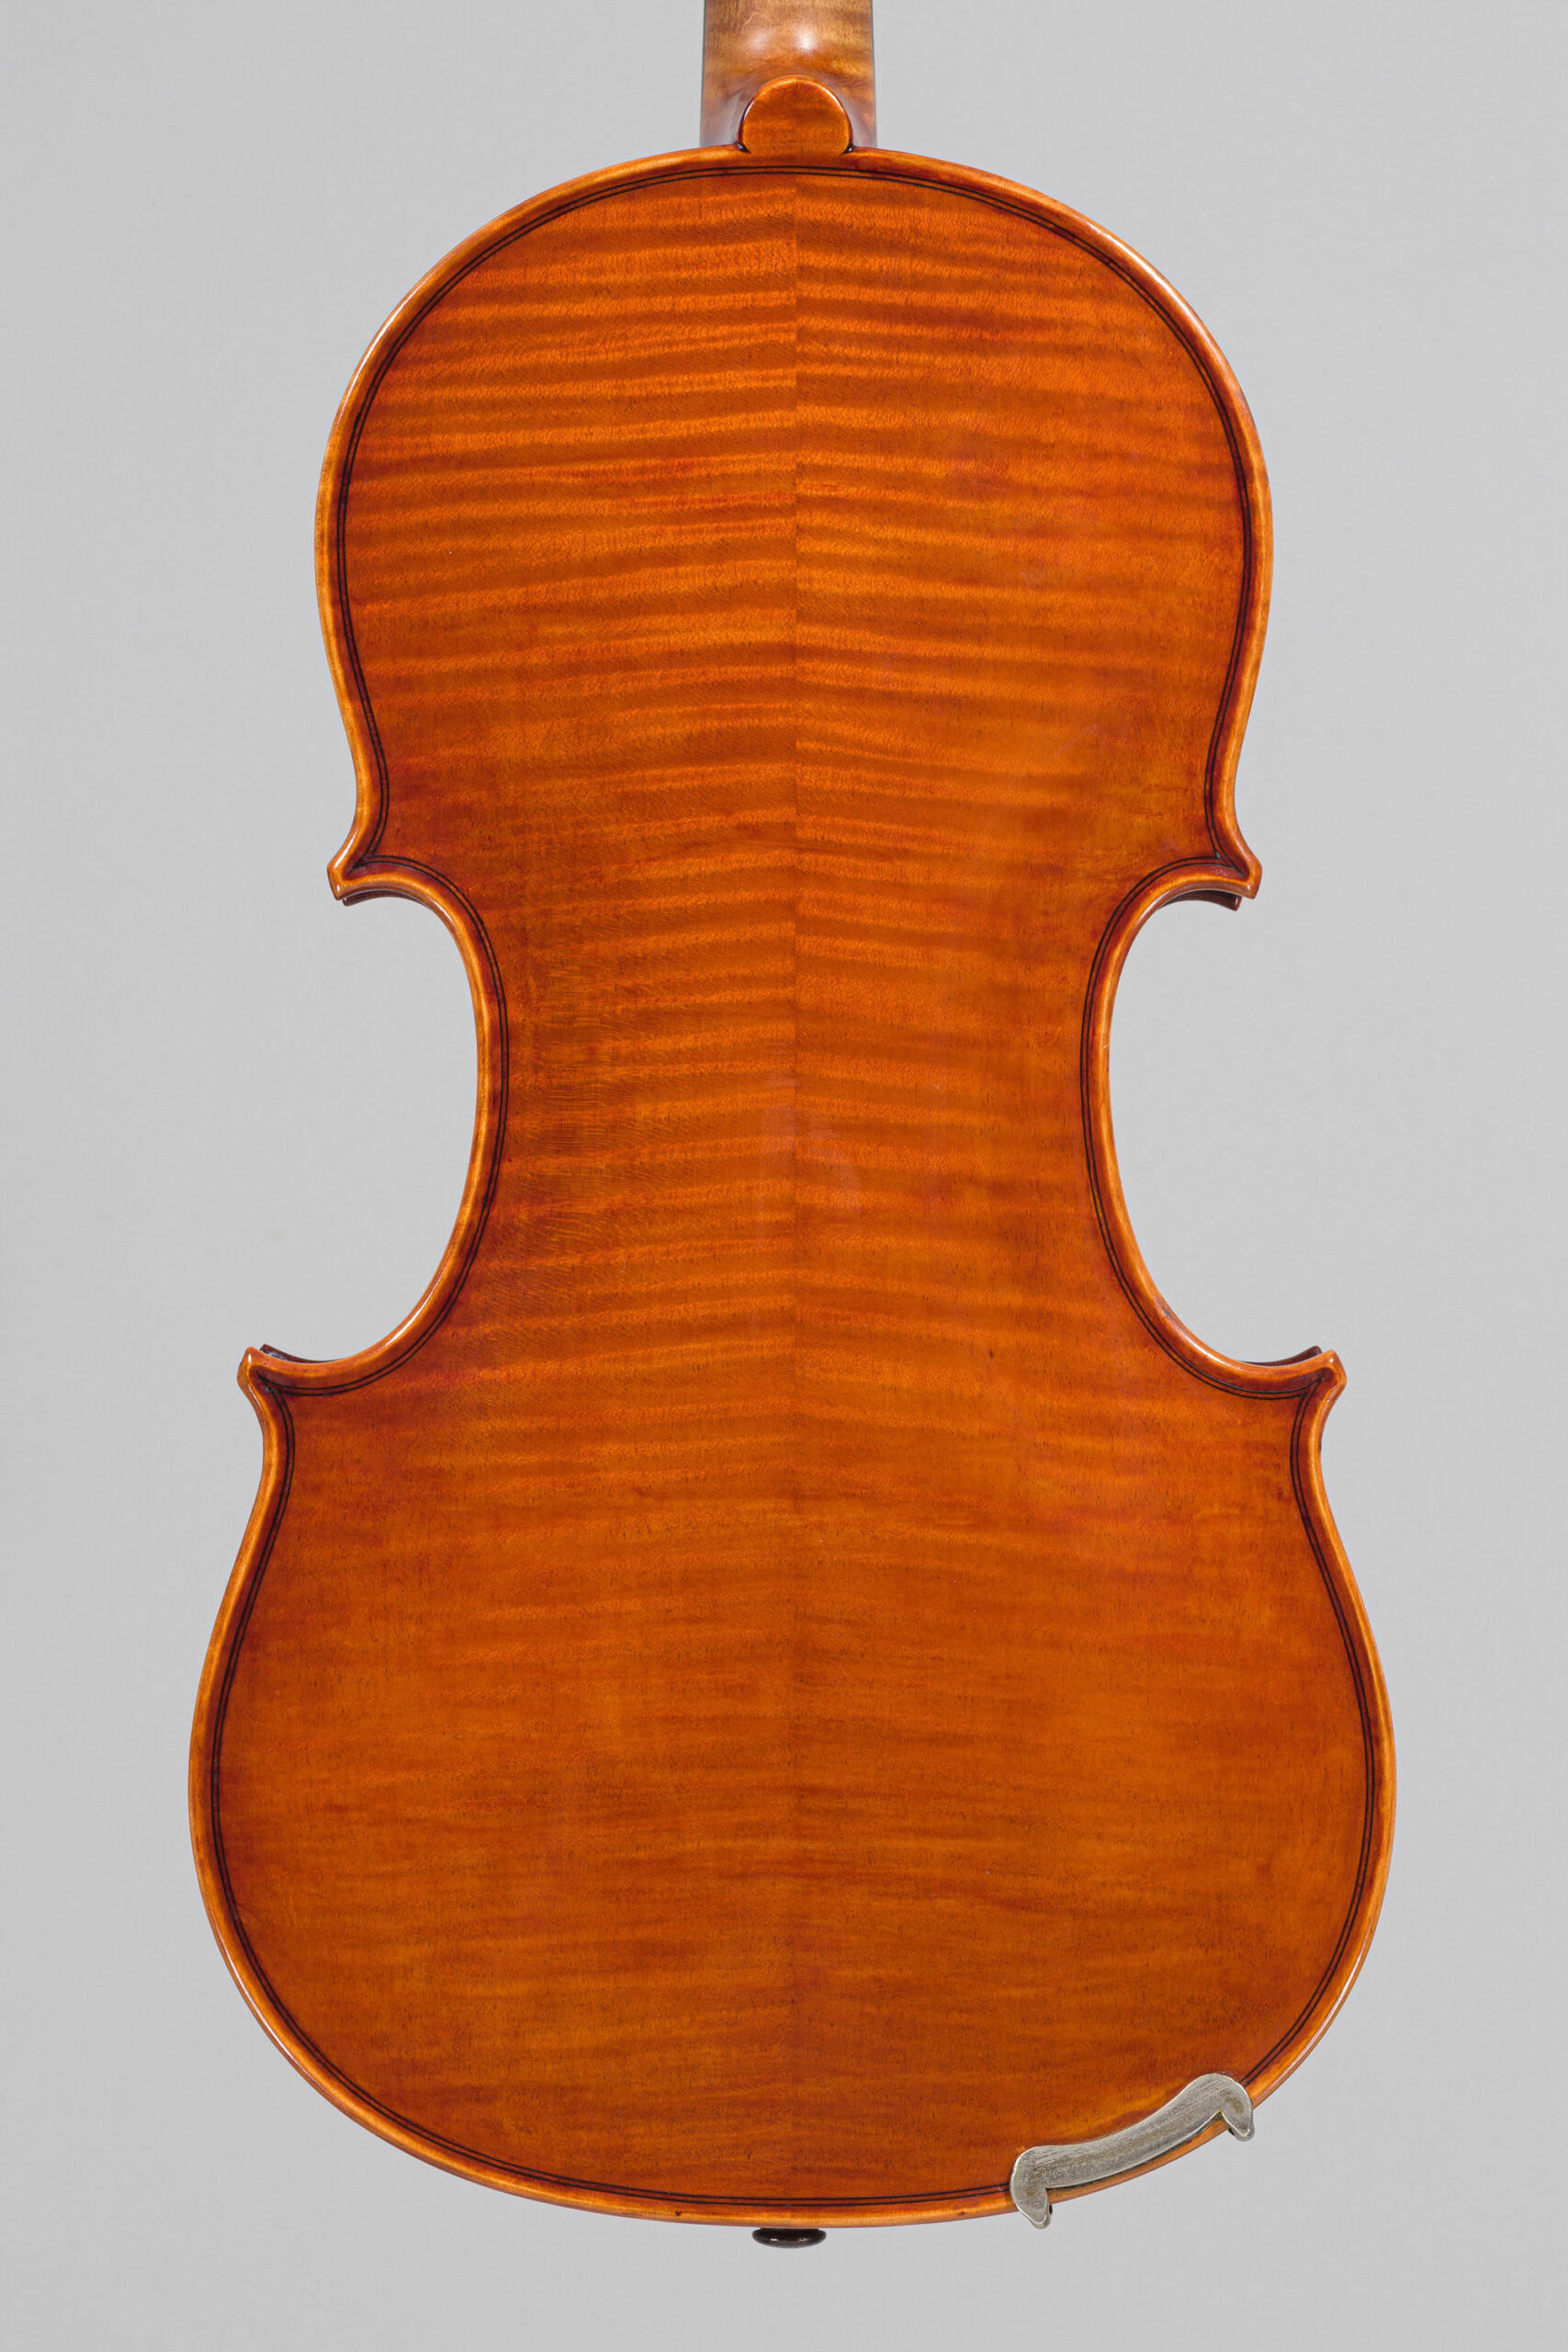 Violon de Jean PETITCOLAS, Paris 1967 Instrument mis en vente par Vichy Enchères le 1er décembre 2022 © C. Darbelet